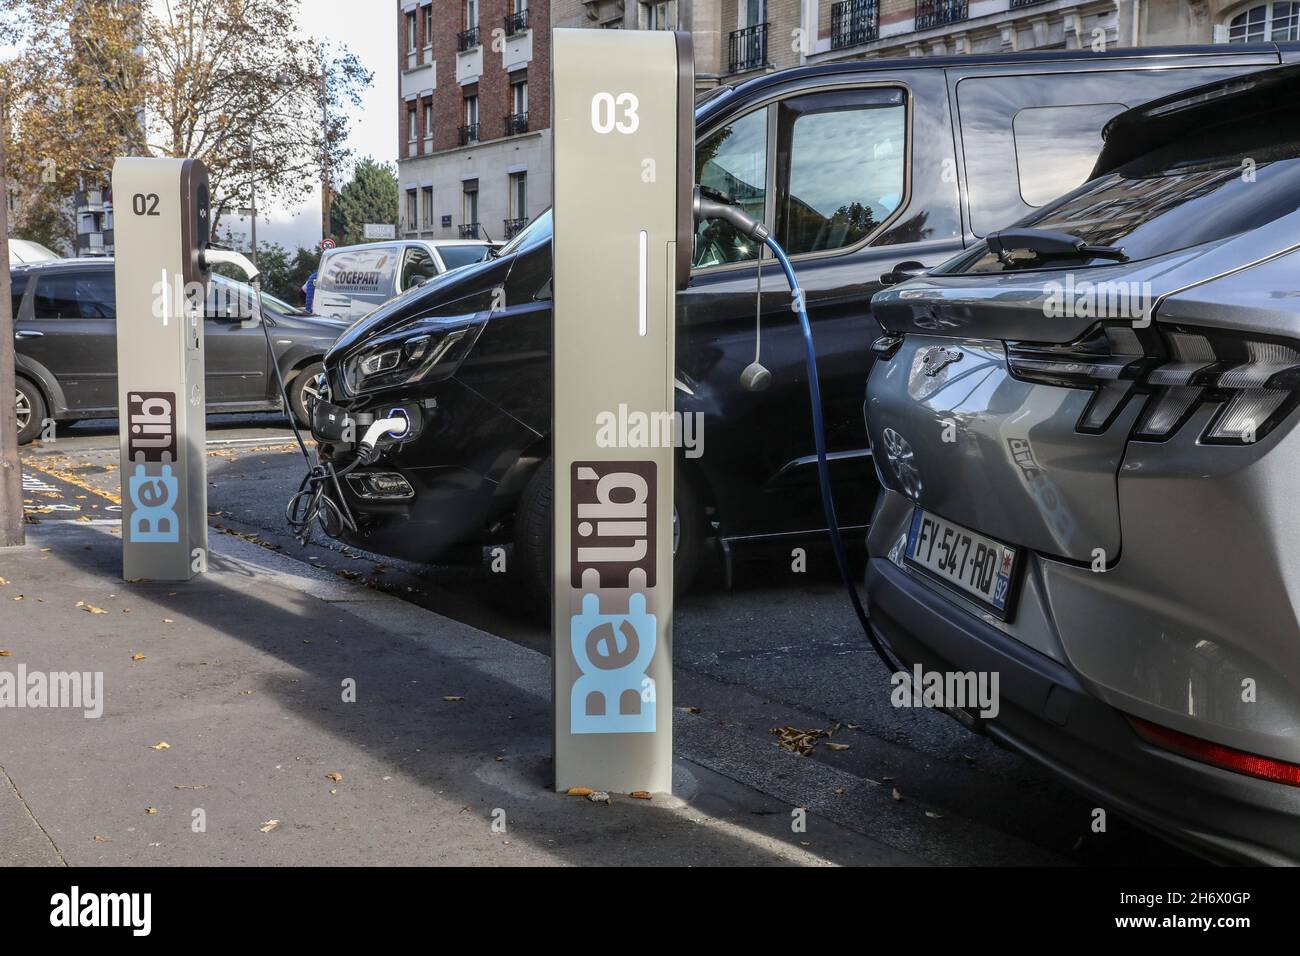 BELIB' DAS ÖFFENTLICHE NETZ VON LADESTATIONEN FÜR ELEKTROFAHRZEUGE IN PARIS Stockfoto